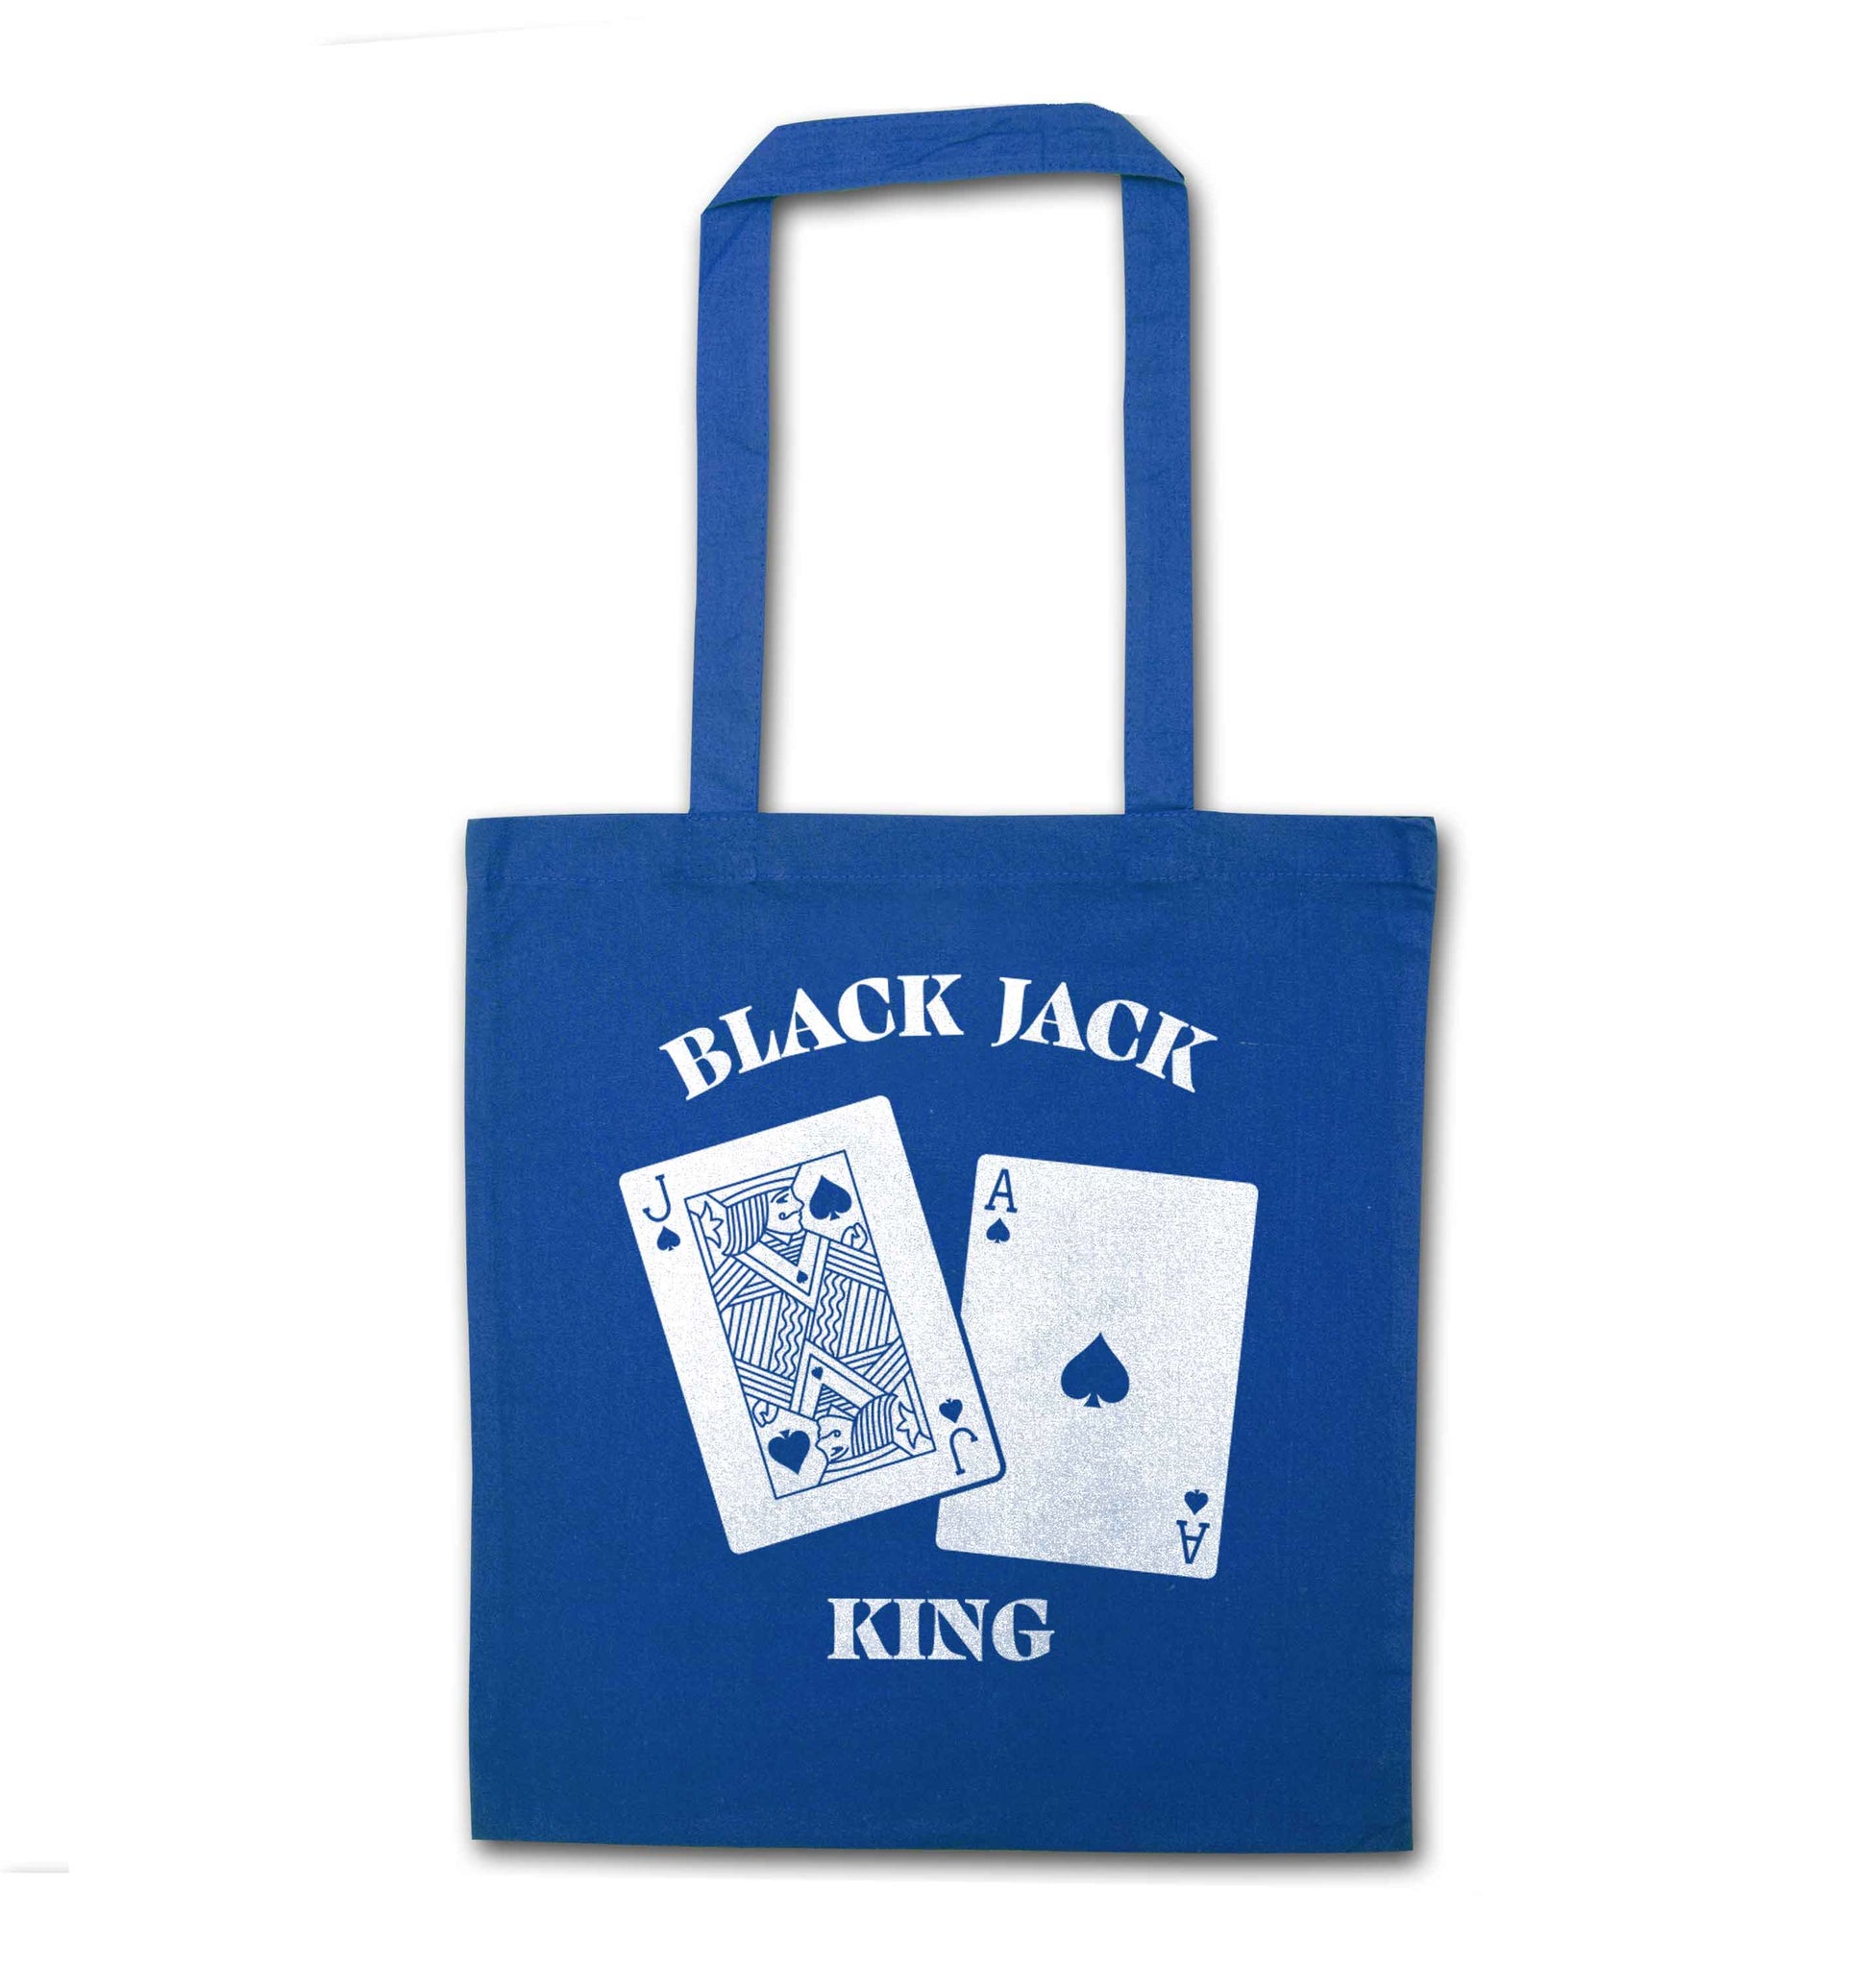 Blackjack king blue tote bag